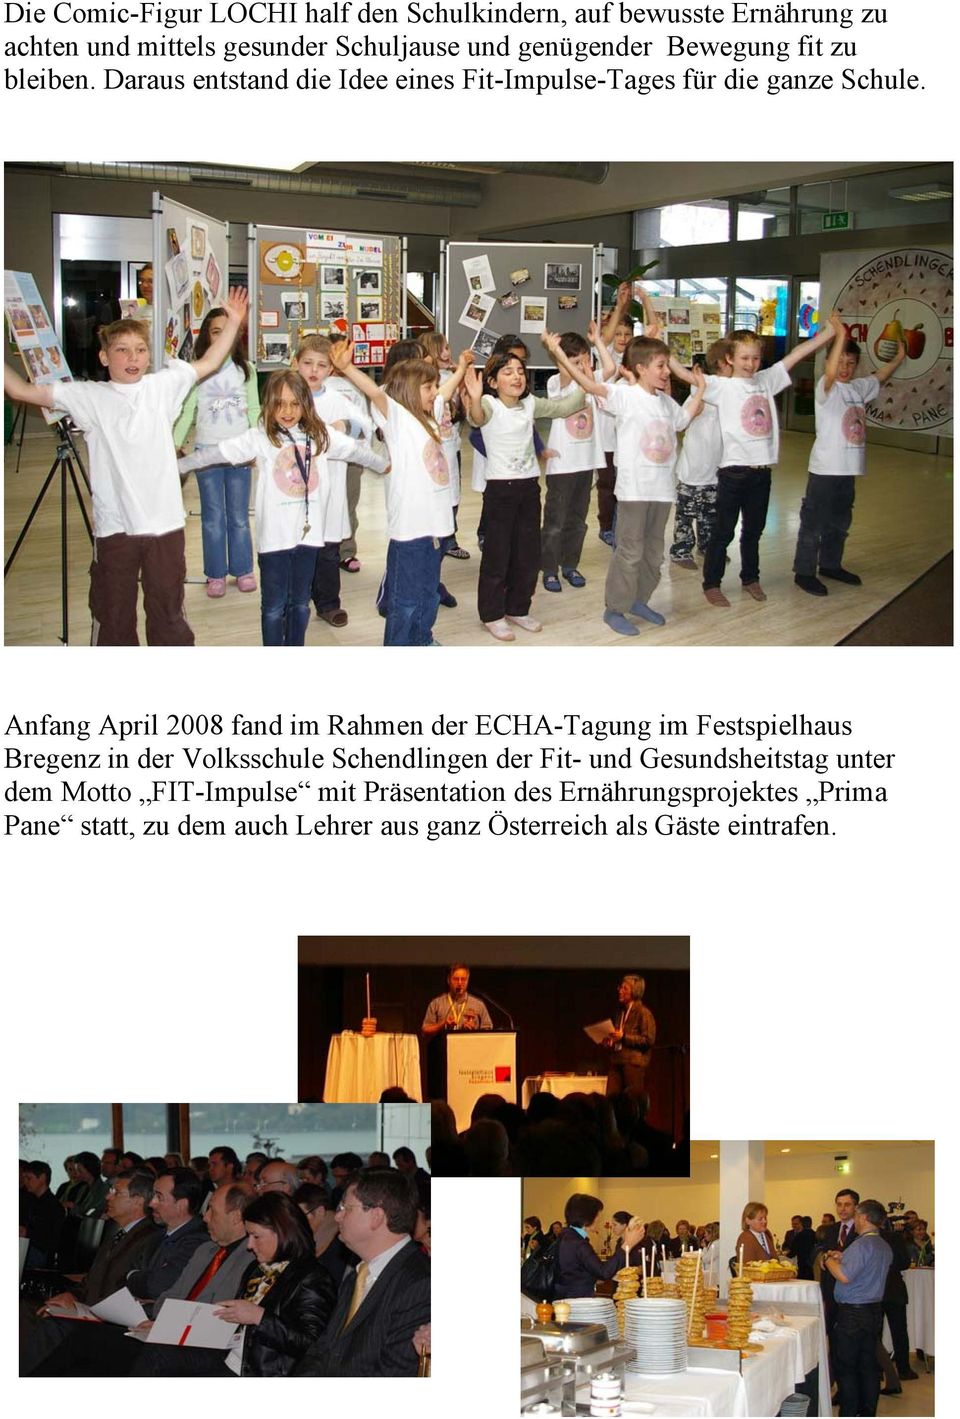 Anfang April 2008 fand im Rahmen der ECHA-Tagung im Festspielhaus Bregenz in der Volksschule Schendlingen der Fit- und